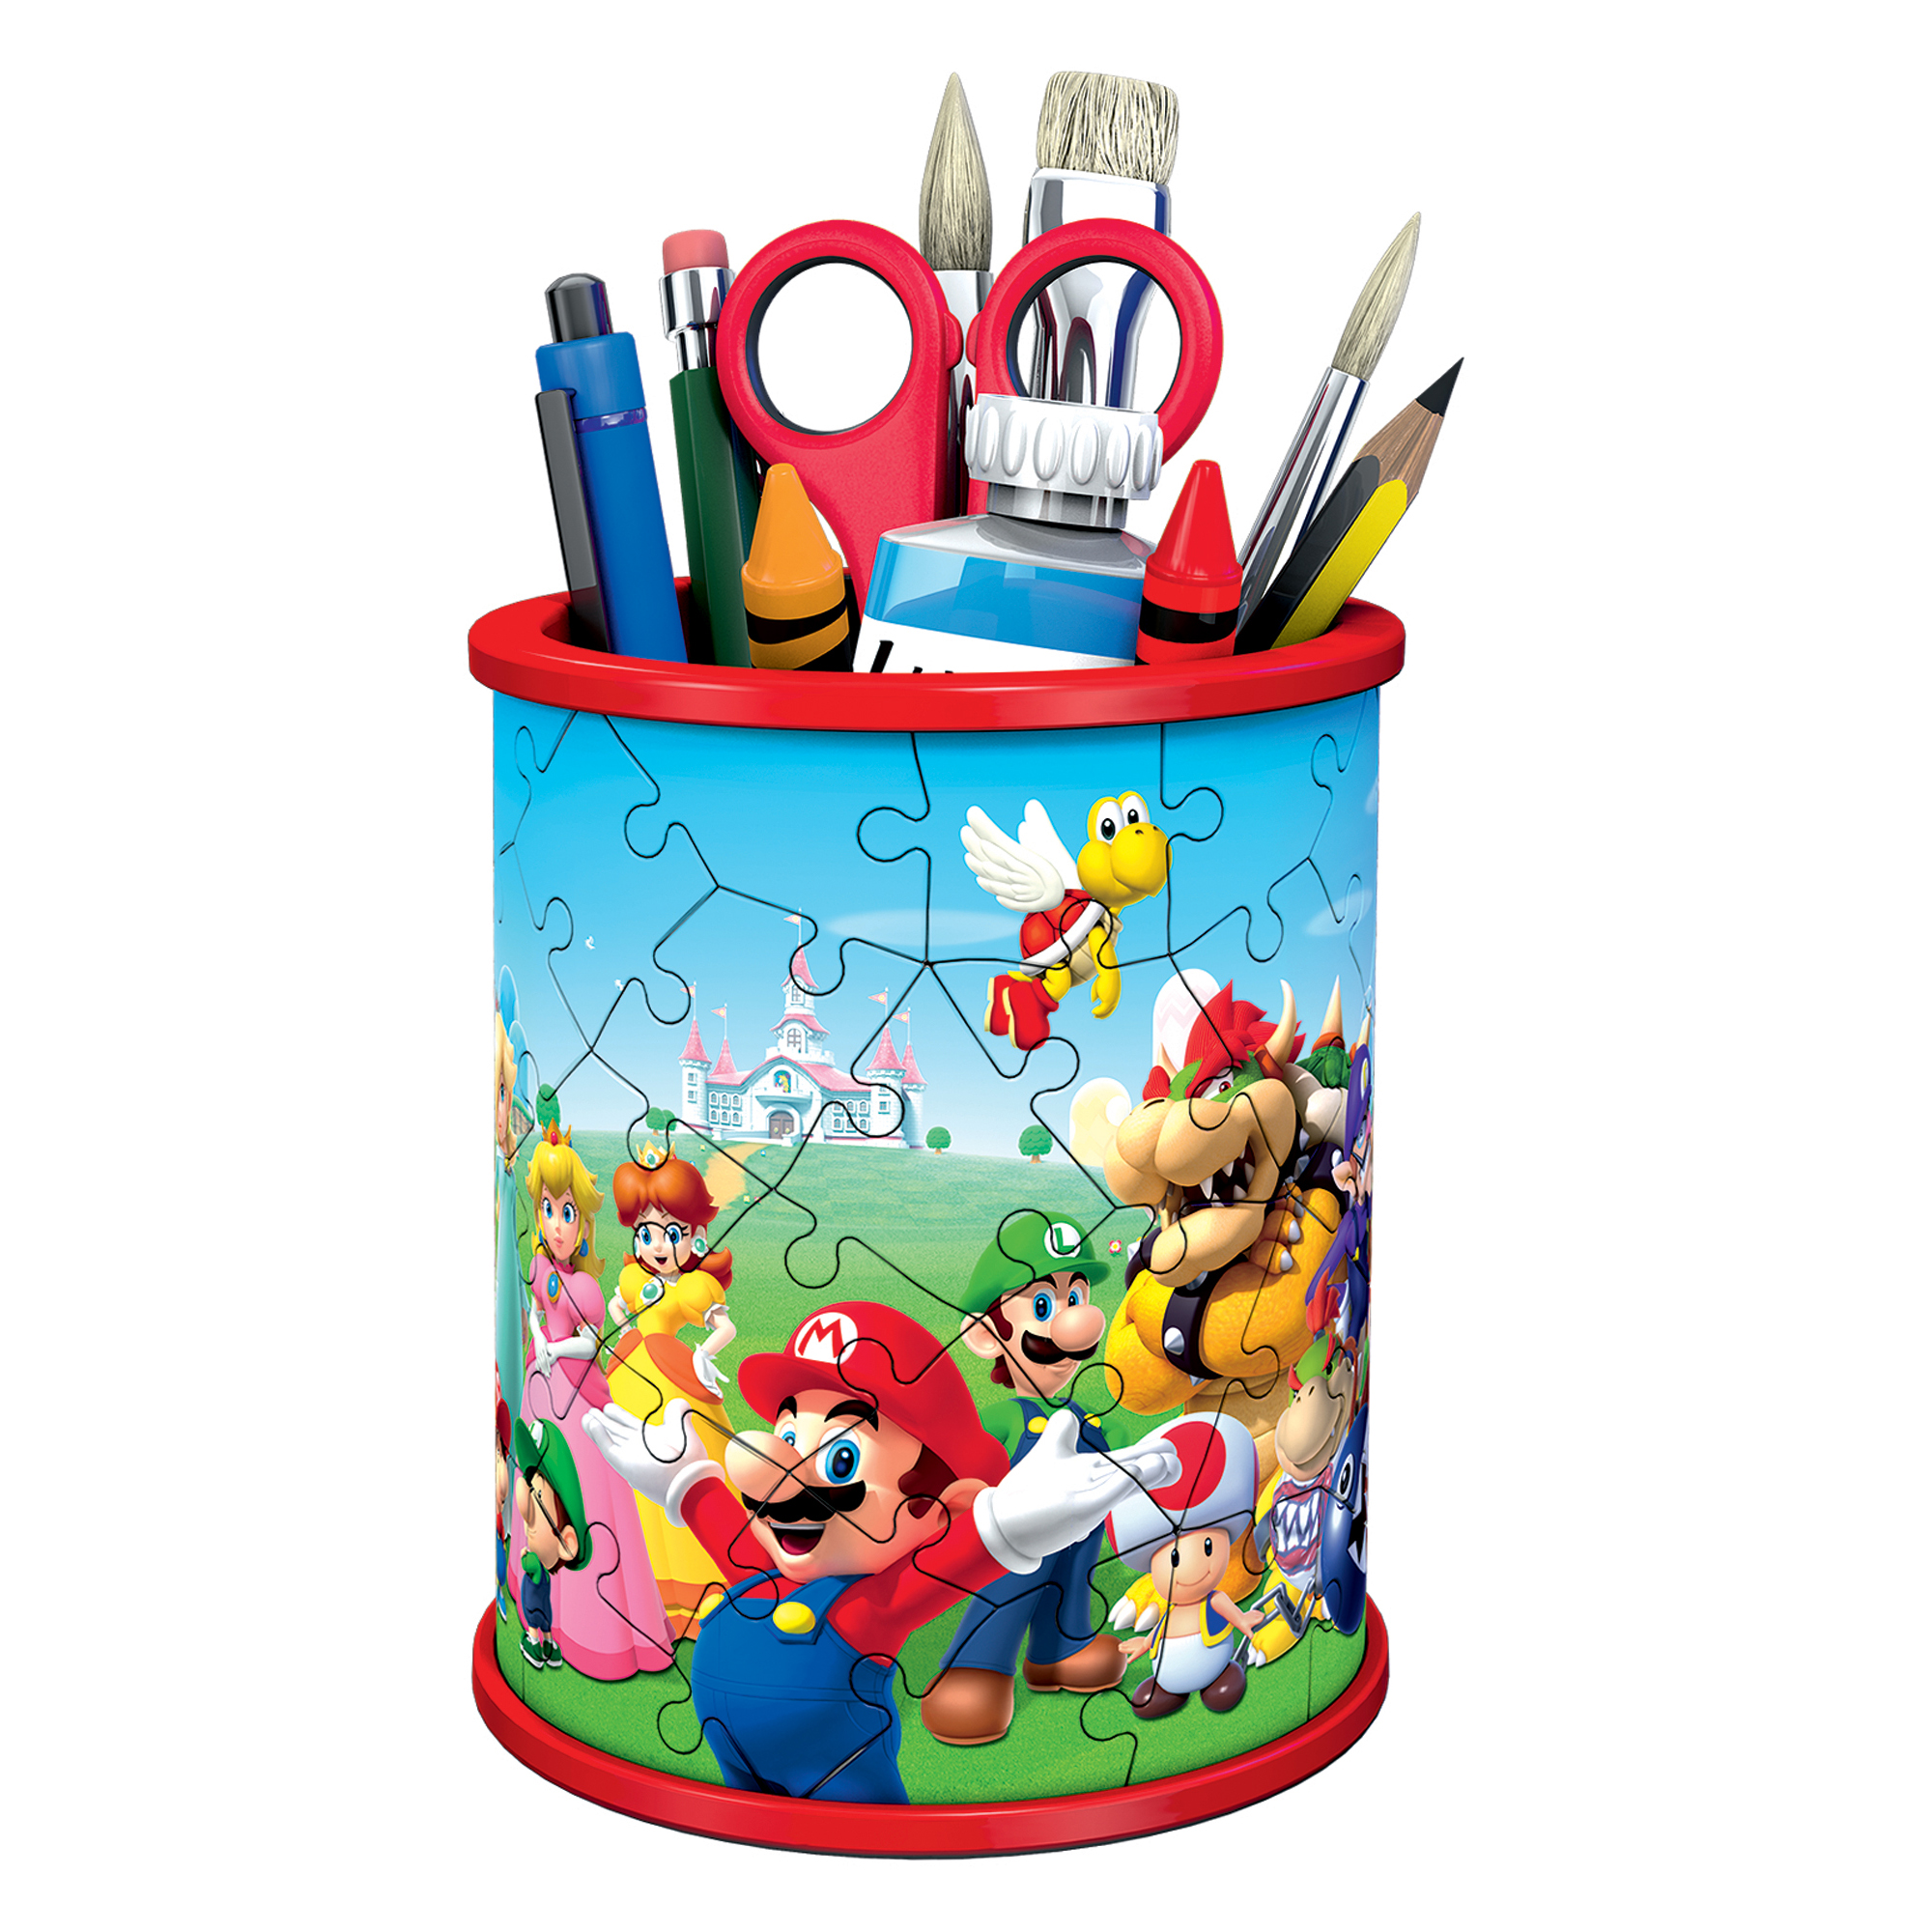 Puzzle 3D Portapenne Super Mario, 54 pezzi - Ravensburger